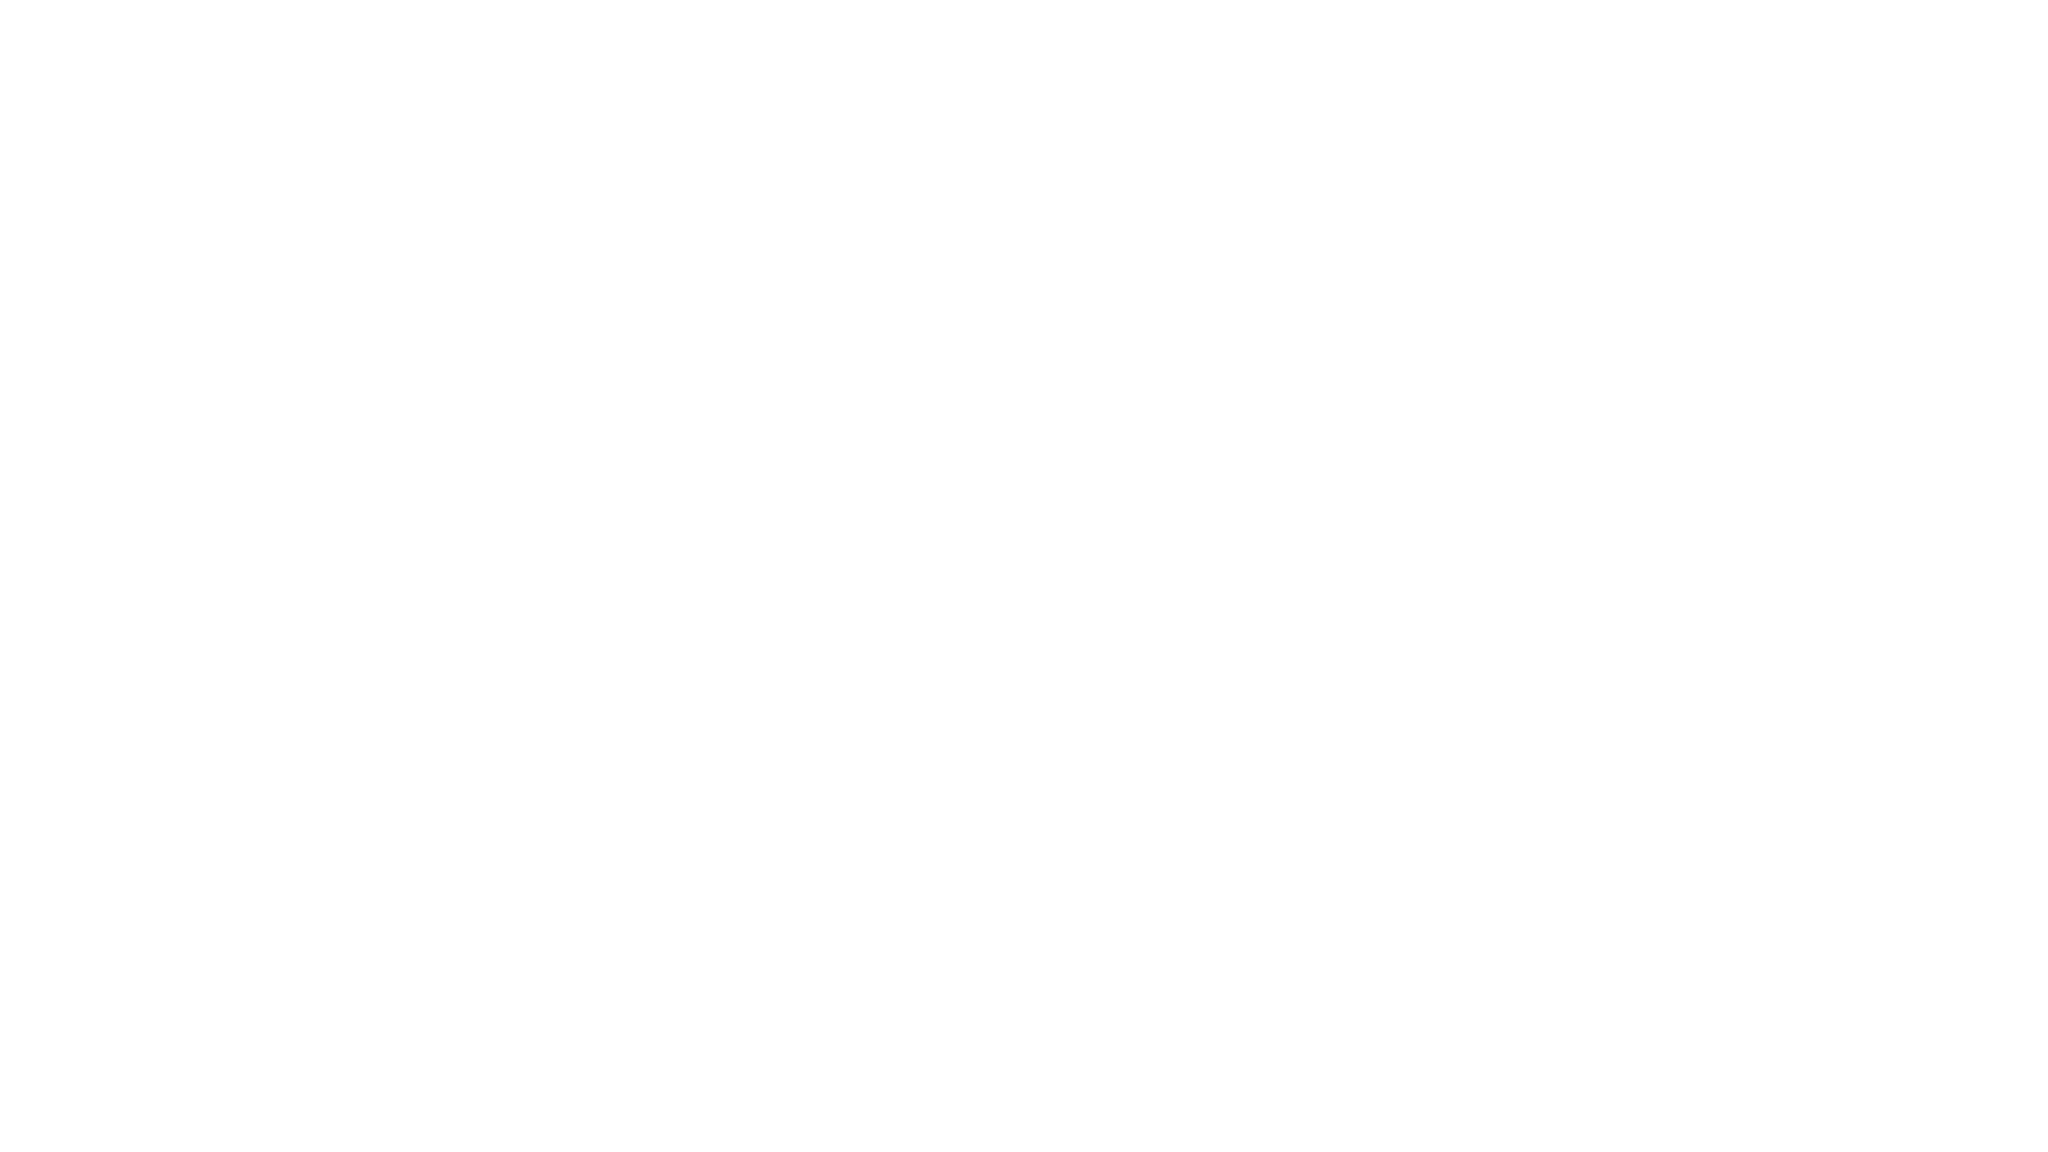 מחנות קיץ לידי (מה לחפש( - מחנות הקיץ האיכותית ביותר באמריקה